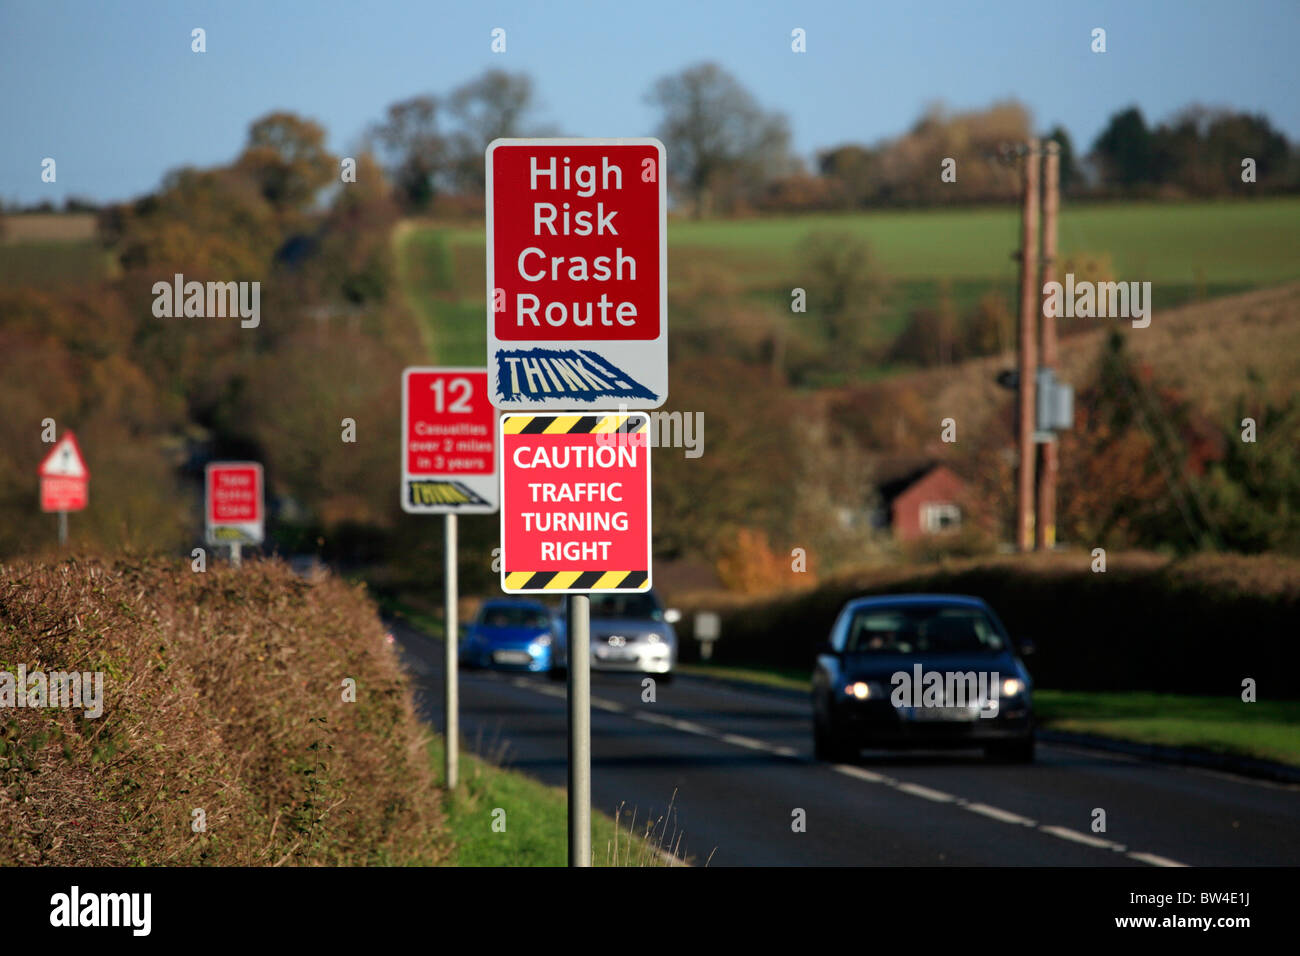 Signos de advertencia de alto riesgo de accidente y accidentes de ruta estadísticas sobre el foso camino caminos rurales, Warwickshire Foto de stock